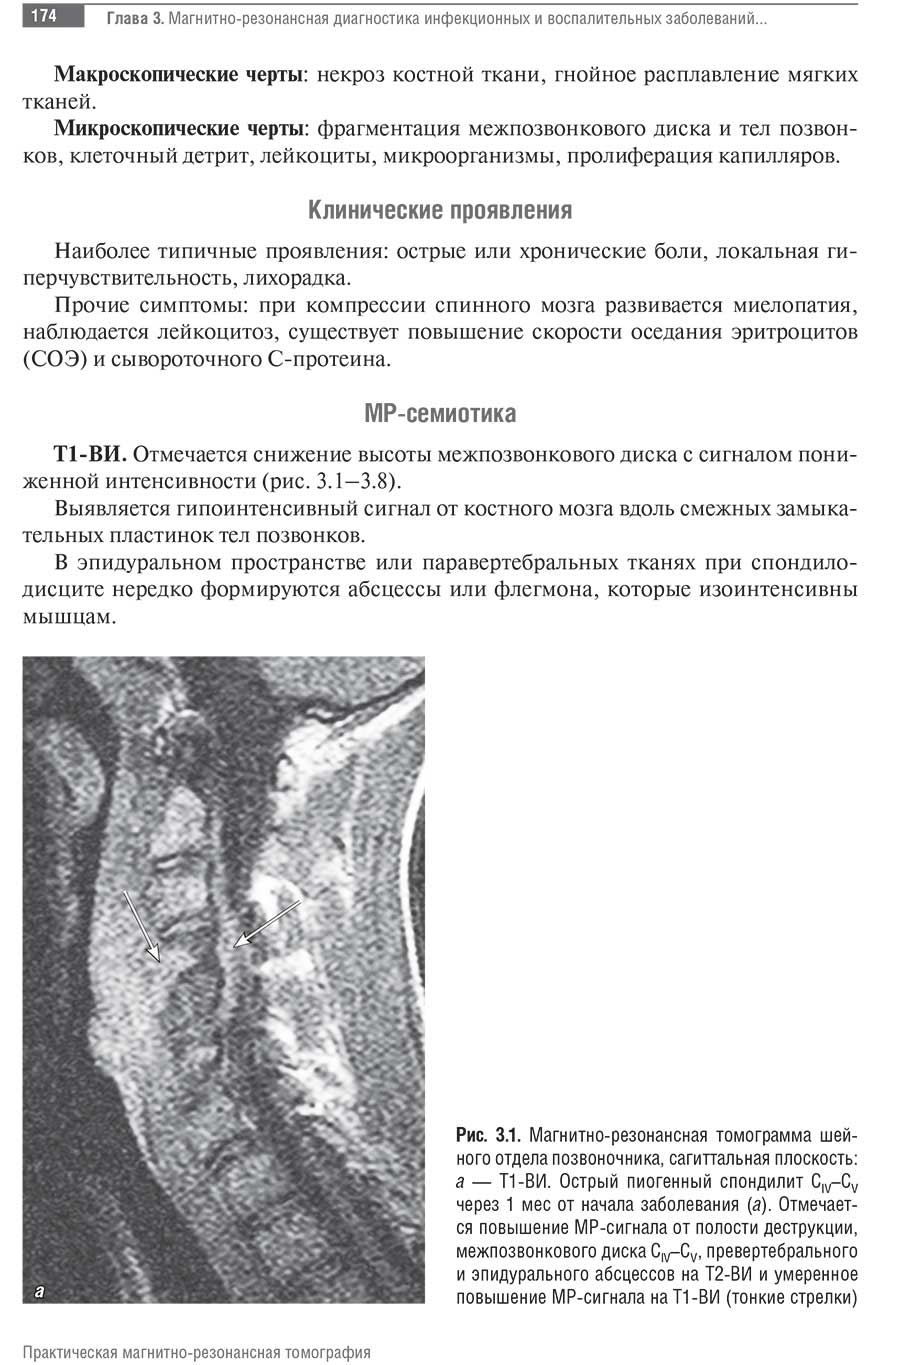 Рис. 3.1. Магнитно-резонансная томограмма шейного отдела позвоночника, сагиттальная плоскость